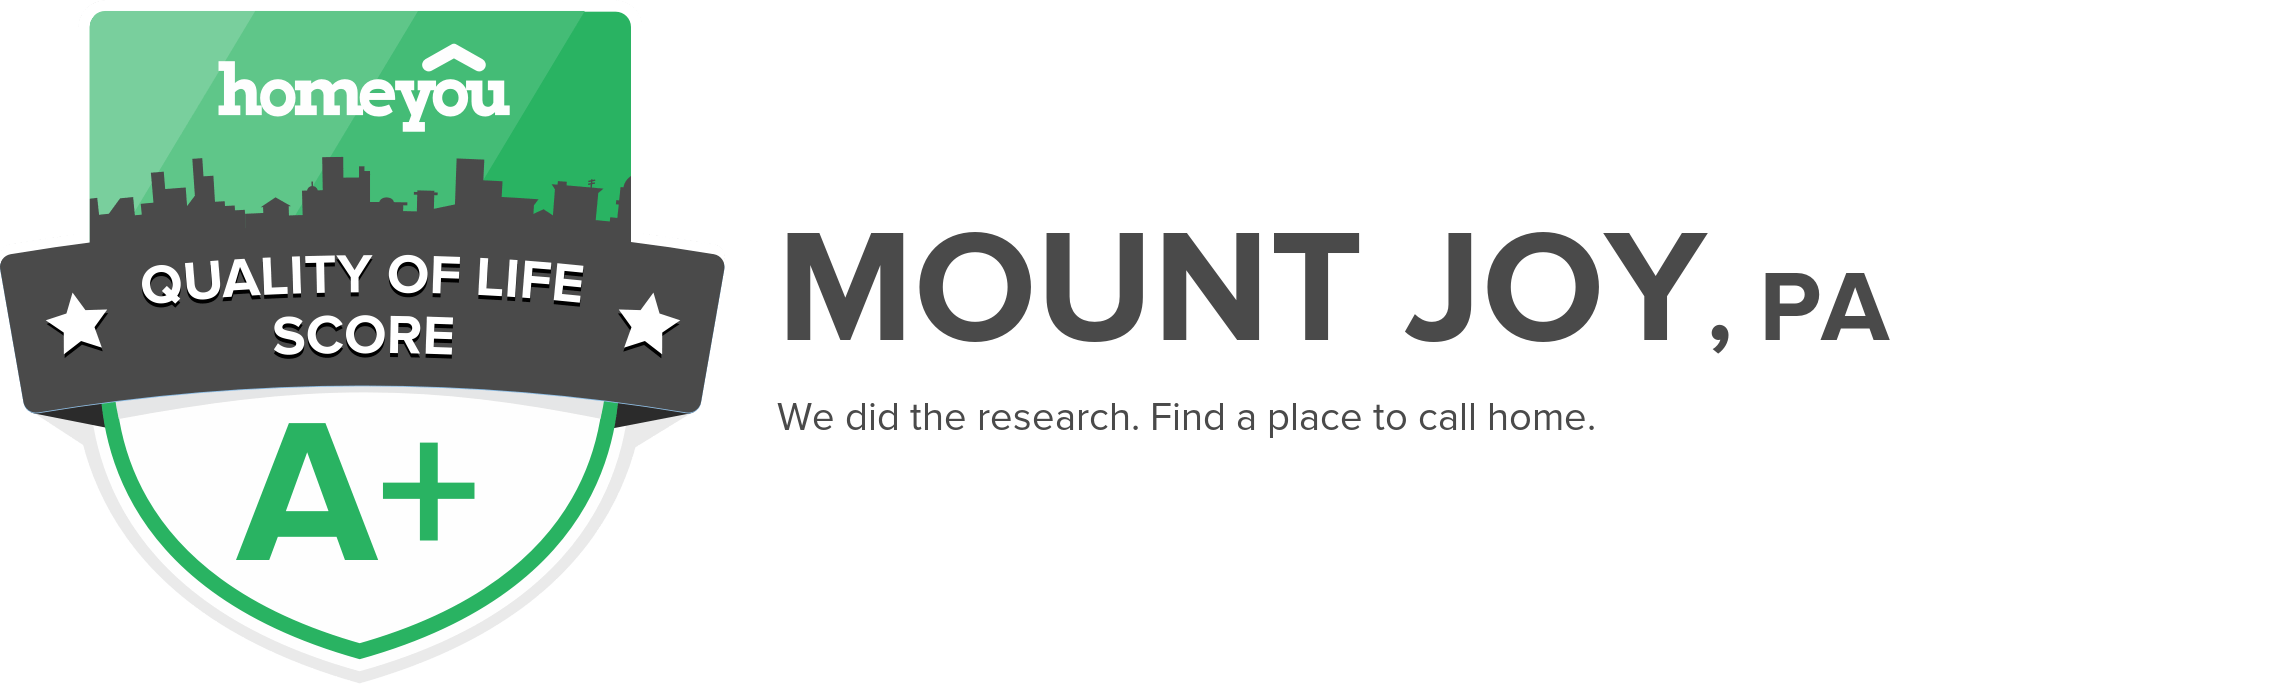 Mount Joy, PA